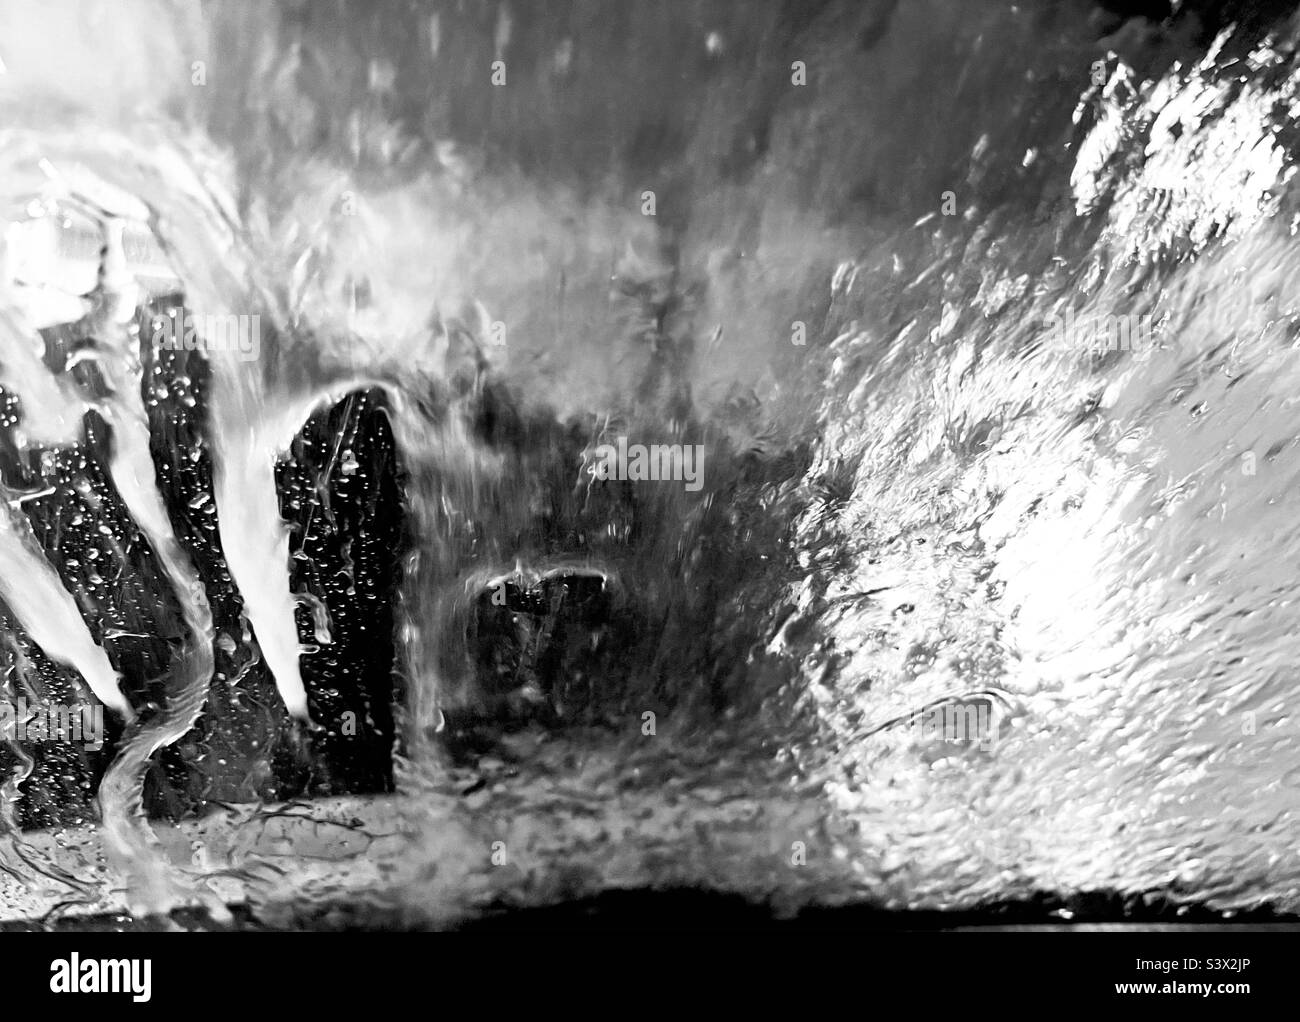 Black and white photo of water splashing Stock Photo